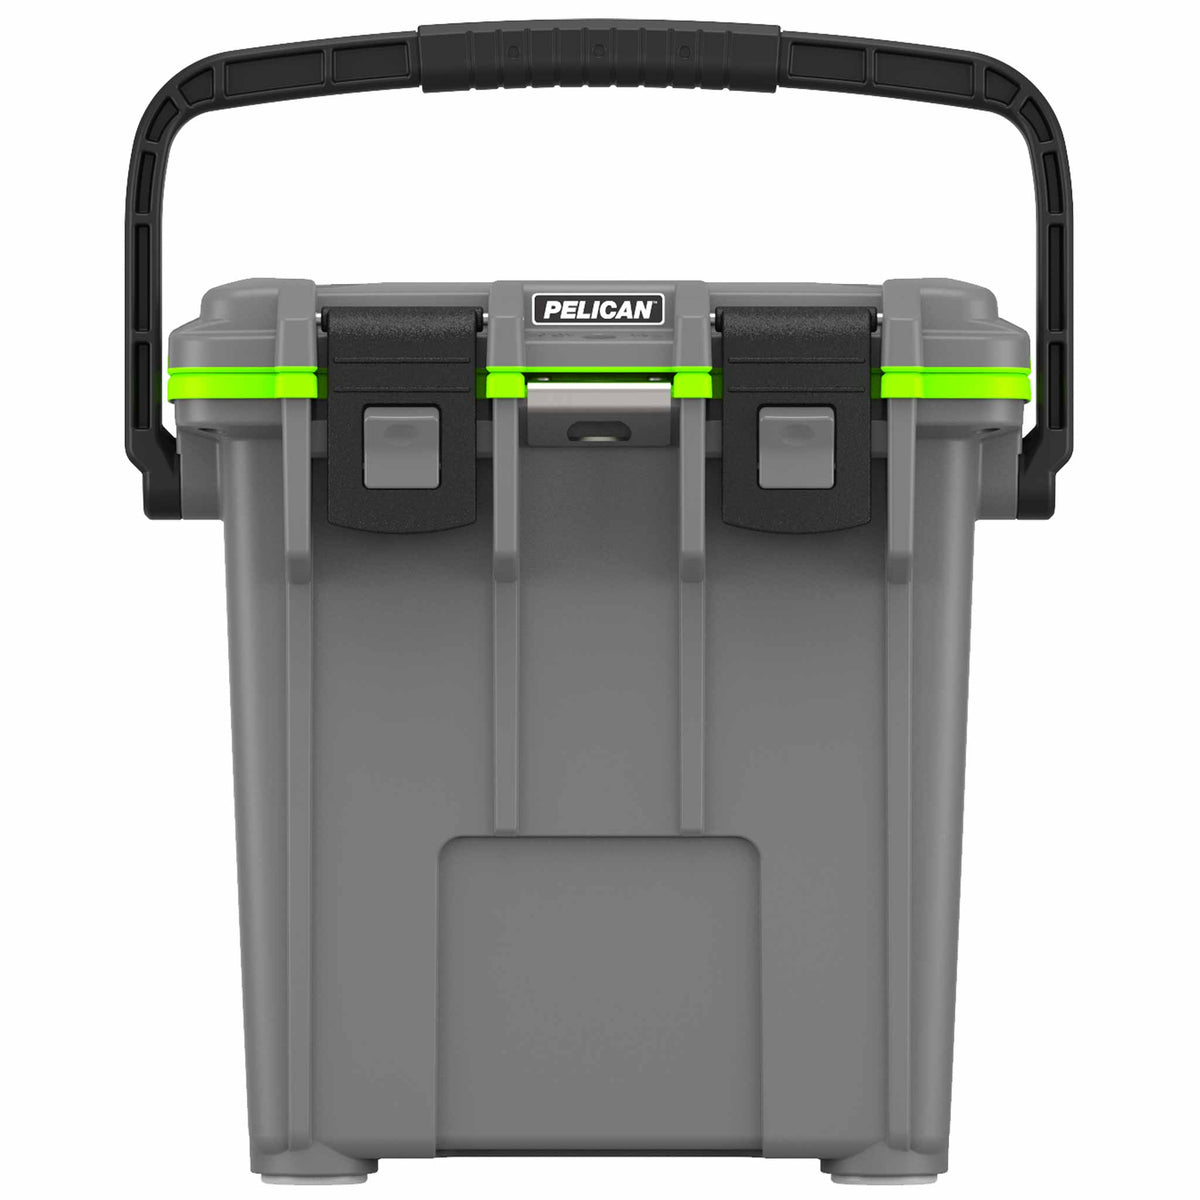 Refurbished Pelican™ 20QT Elite Cooler Cooler in Dark Grey/Green